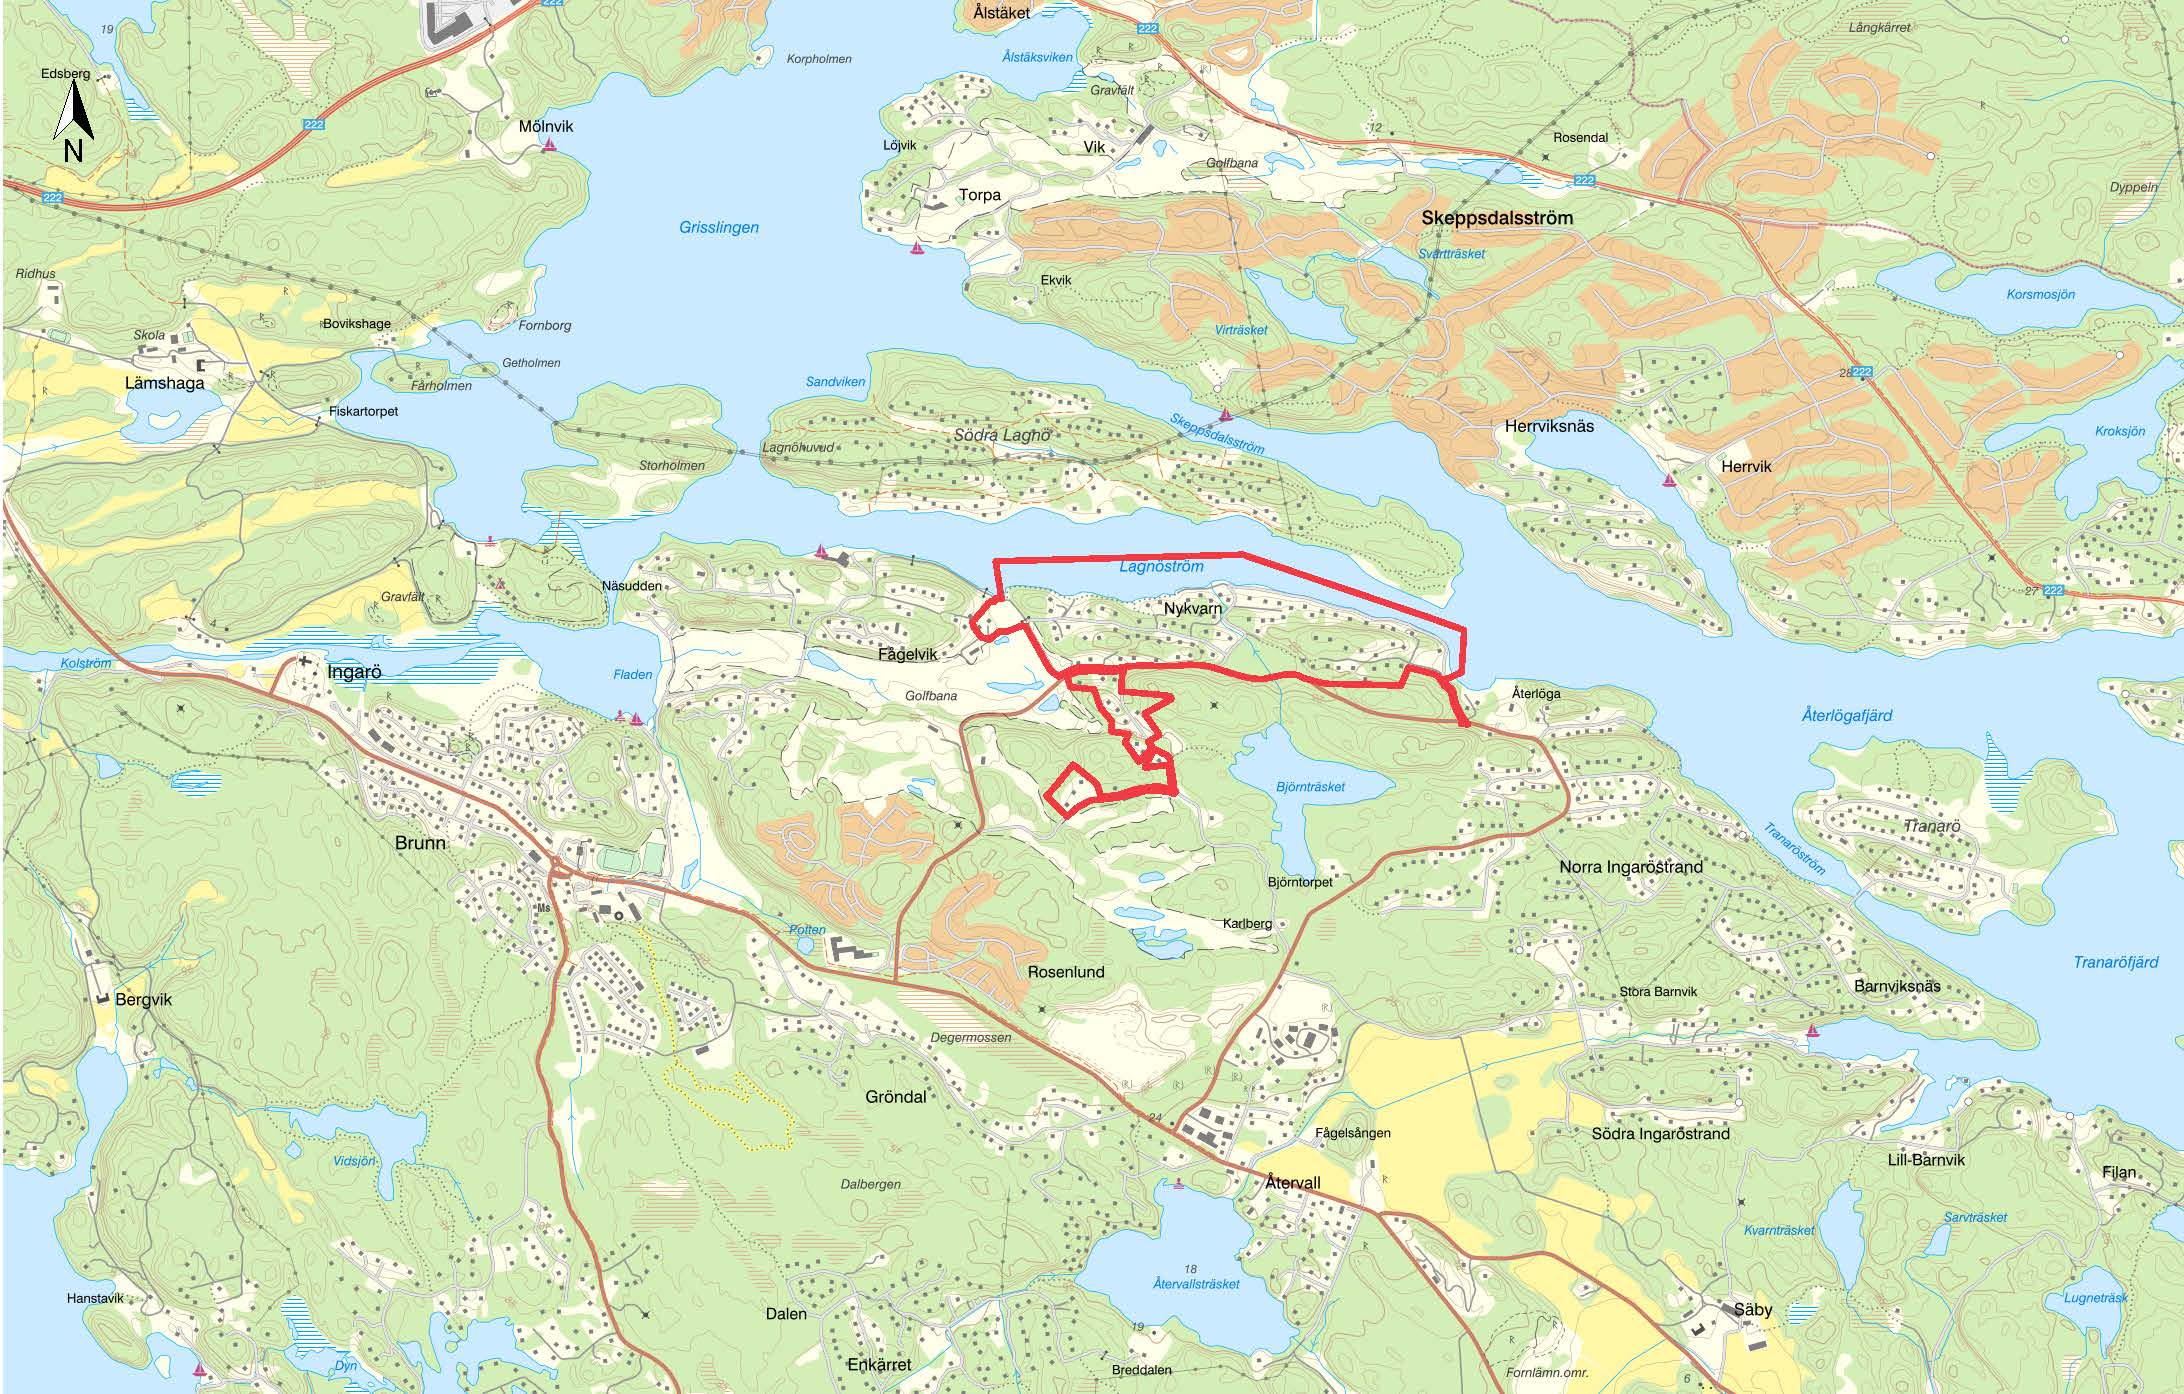 Kartbild över området Fågelvik-Nykvarn.